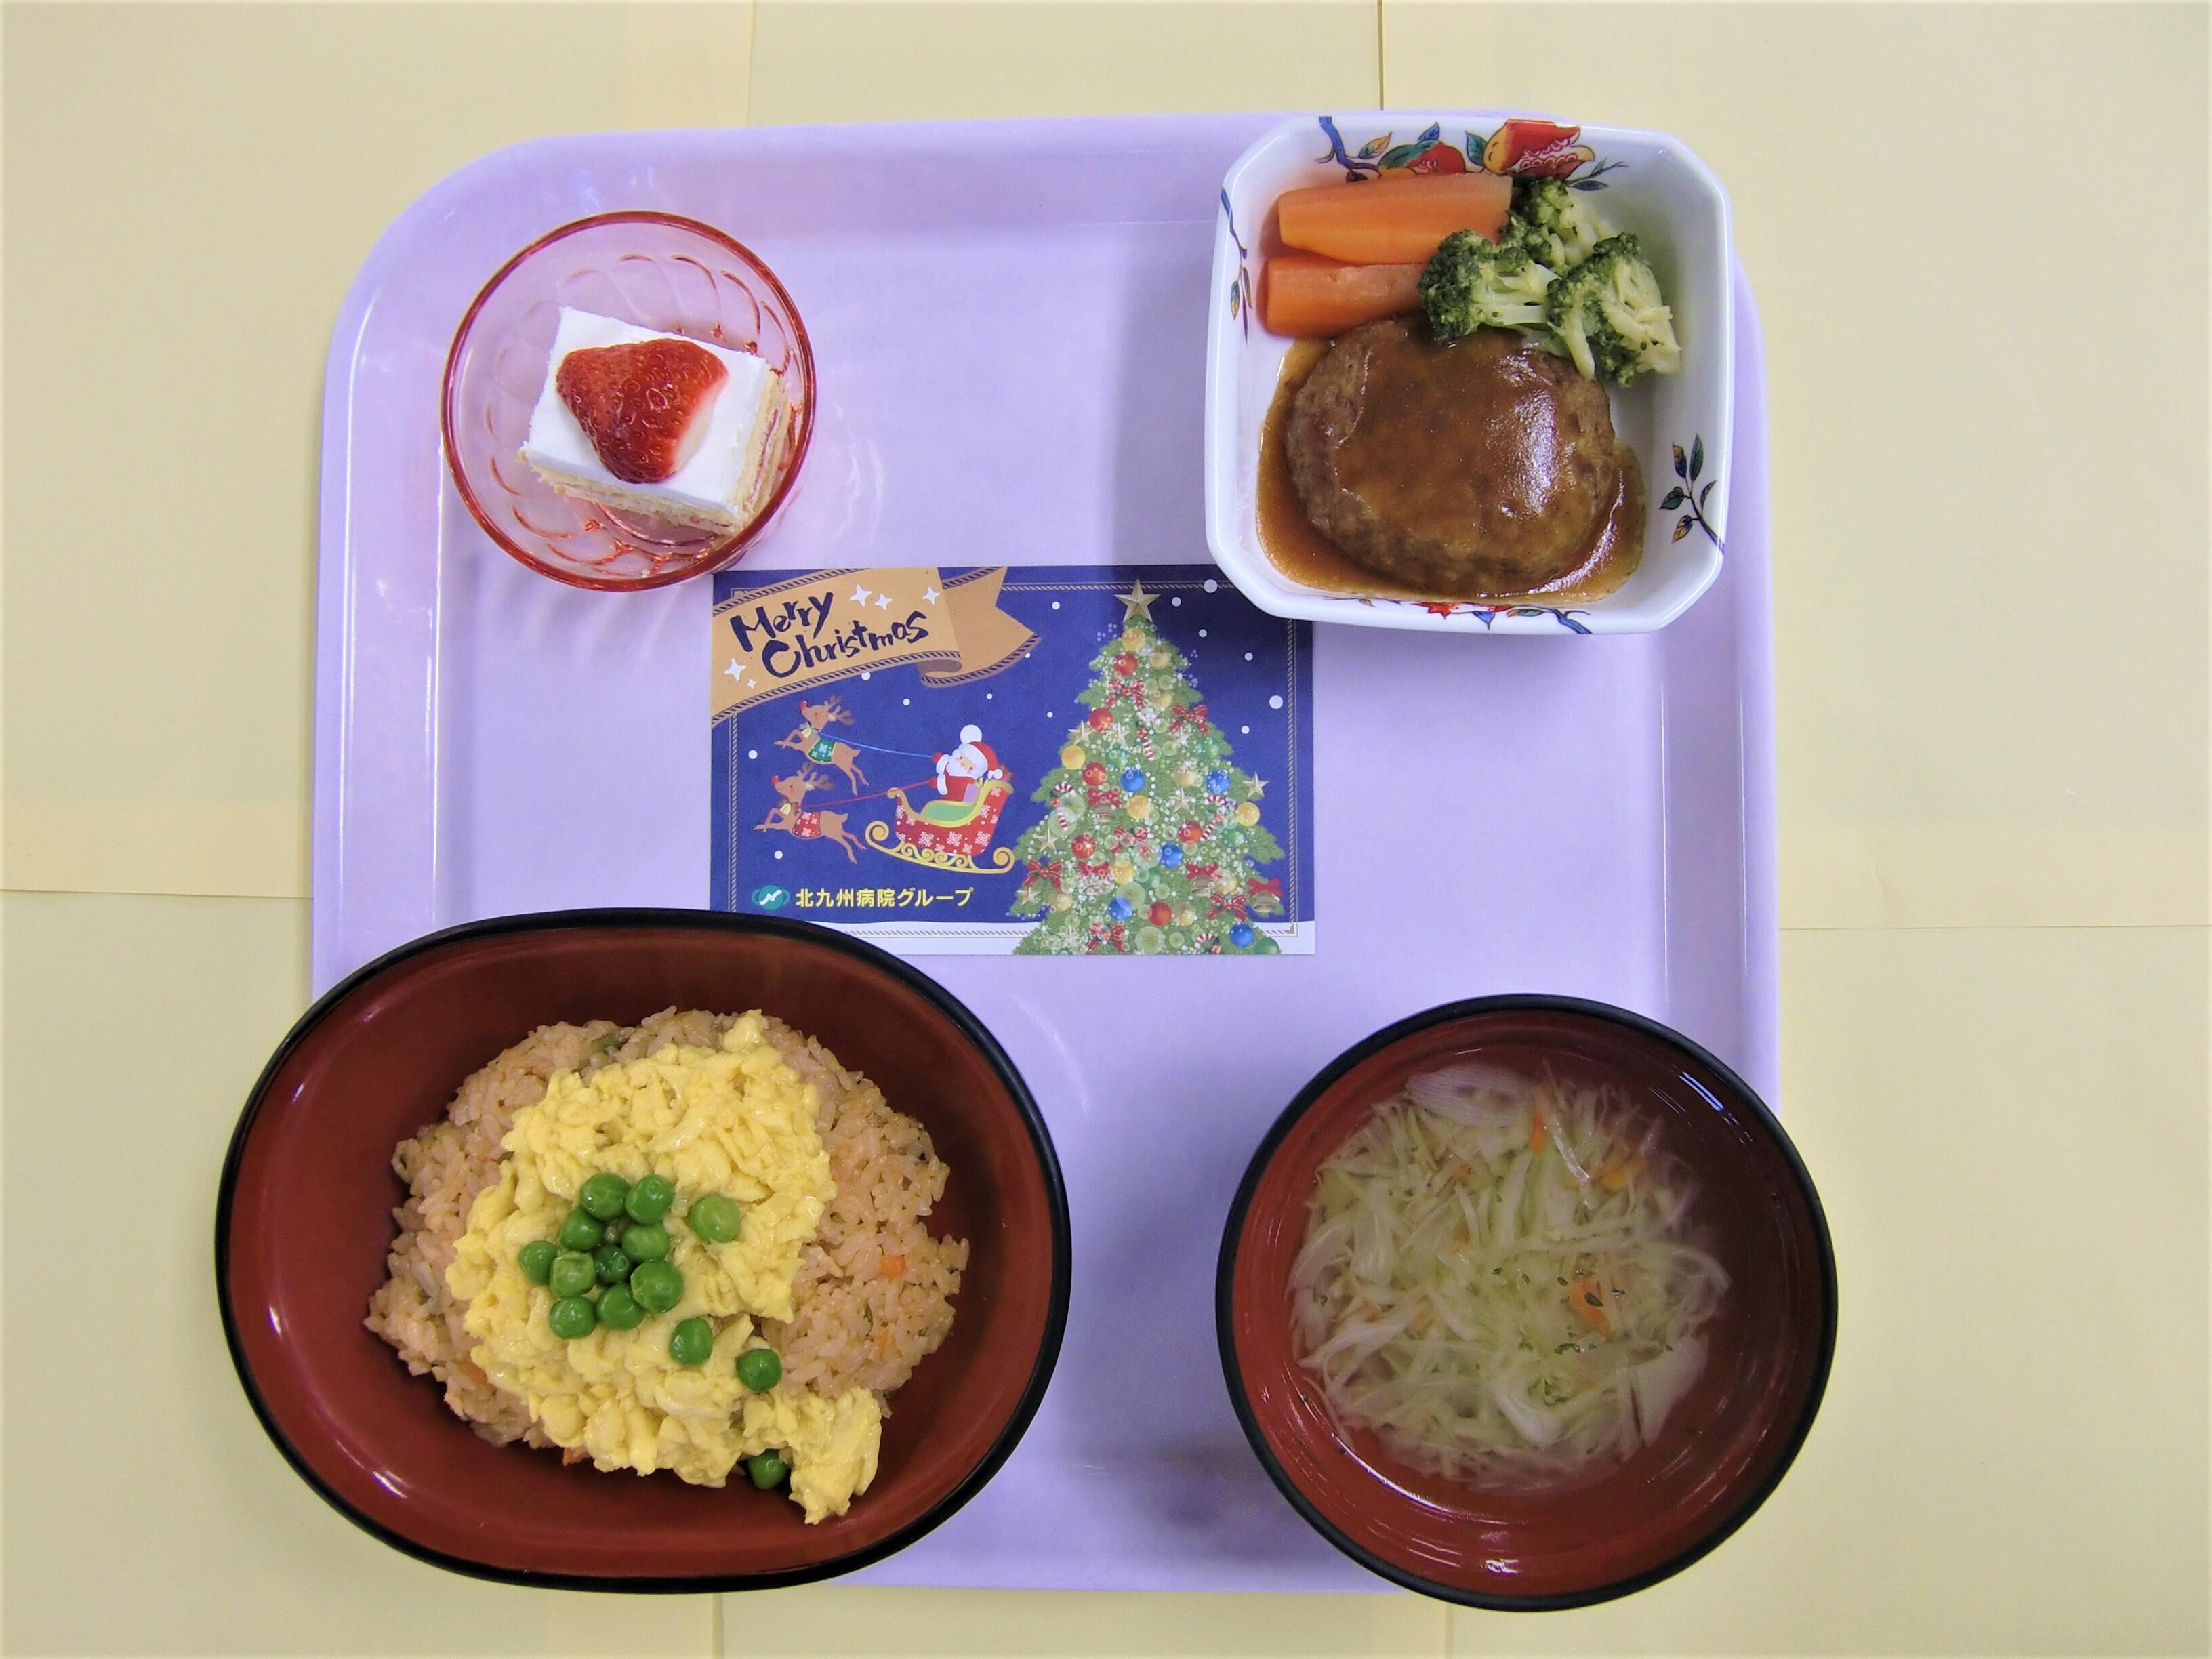 クリスマスに行事食を提供しました 北九州病院グループ 北九州中央病院